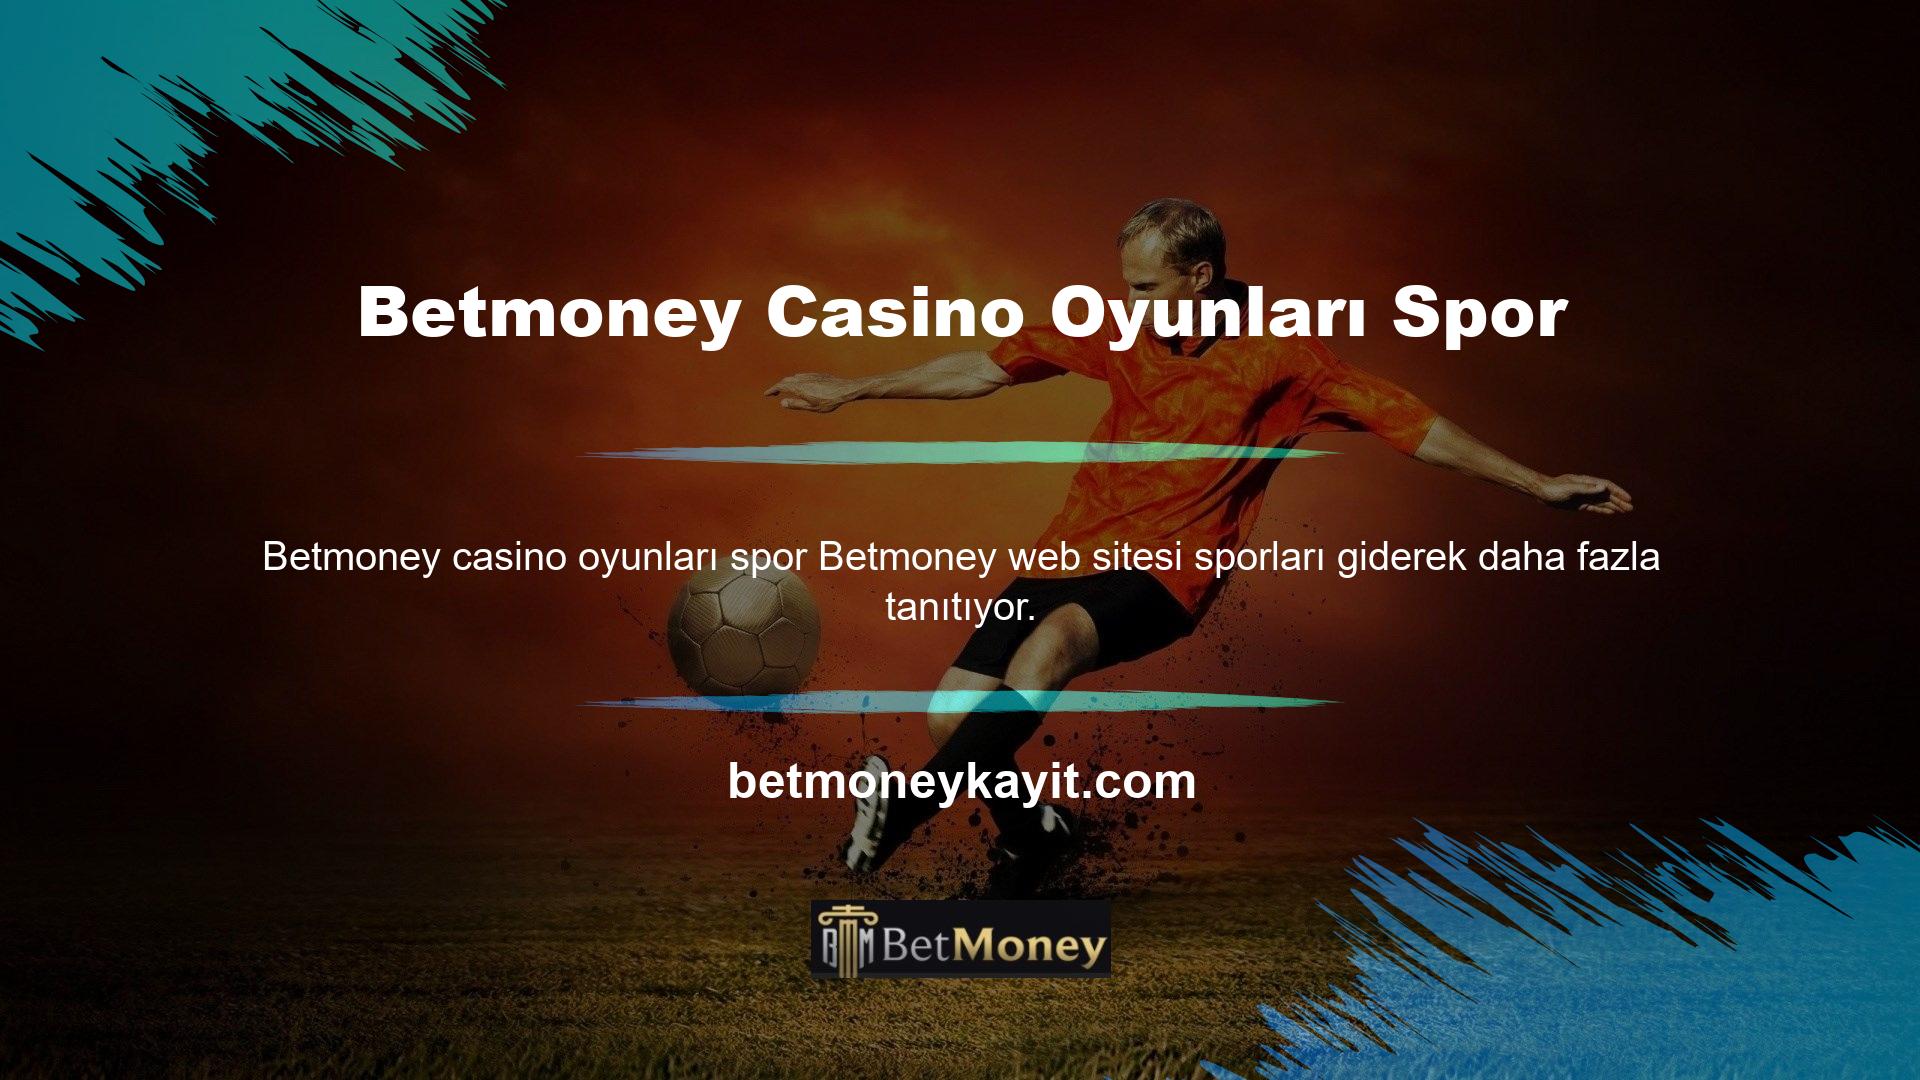 Artık Betmoney web sitesi üzerinden spor bahisleri yapabilirsiniz